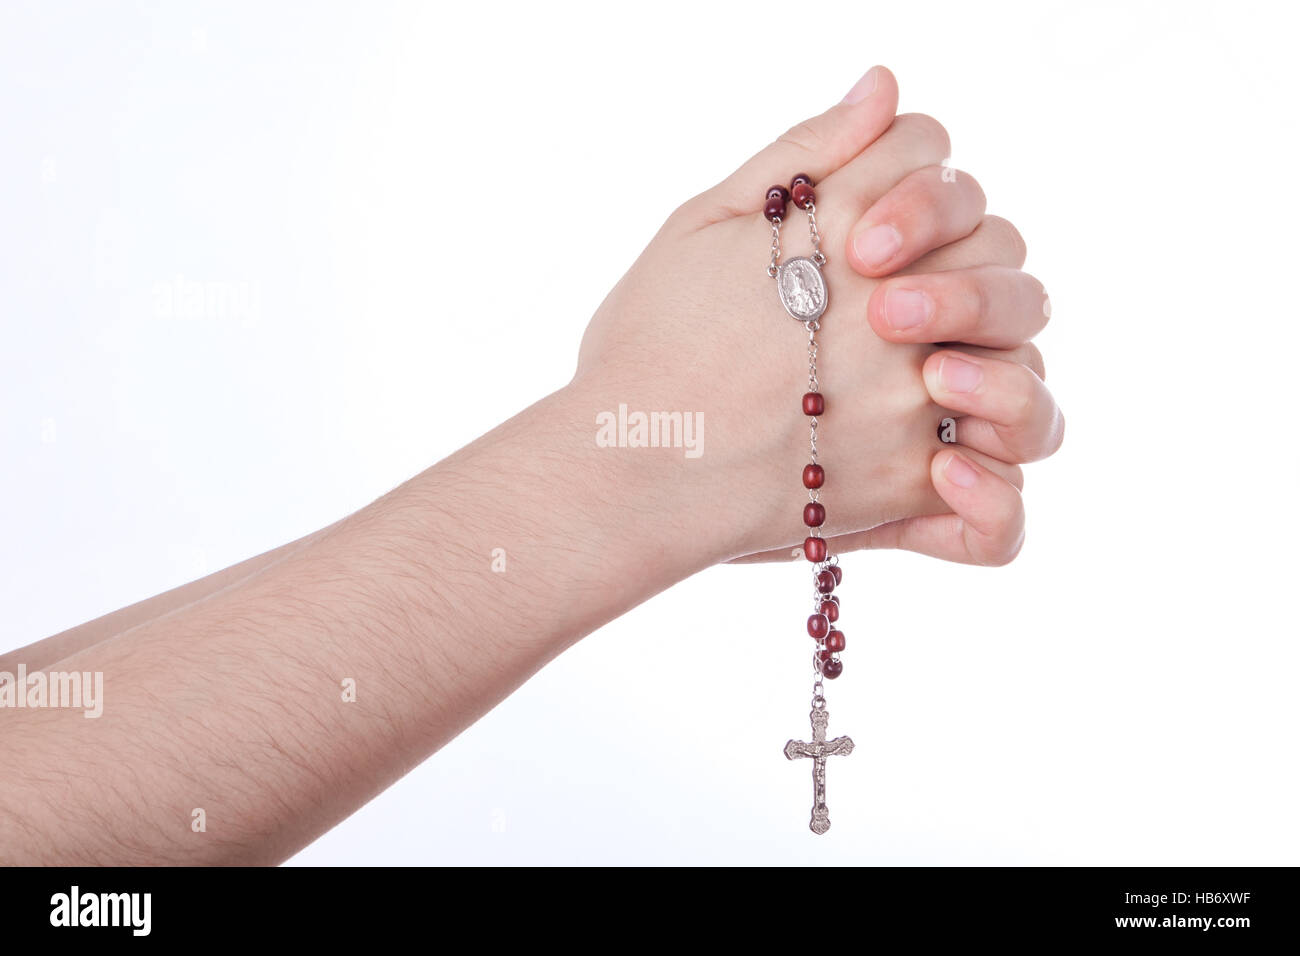 Les mains en prière fermé tenant un rosaire isolé sur fond blanc Banque D'Images